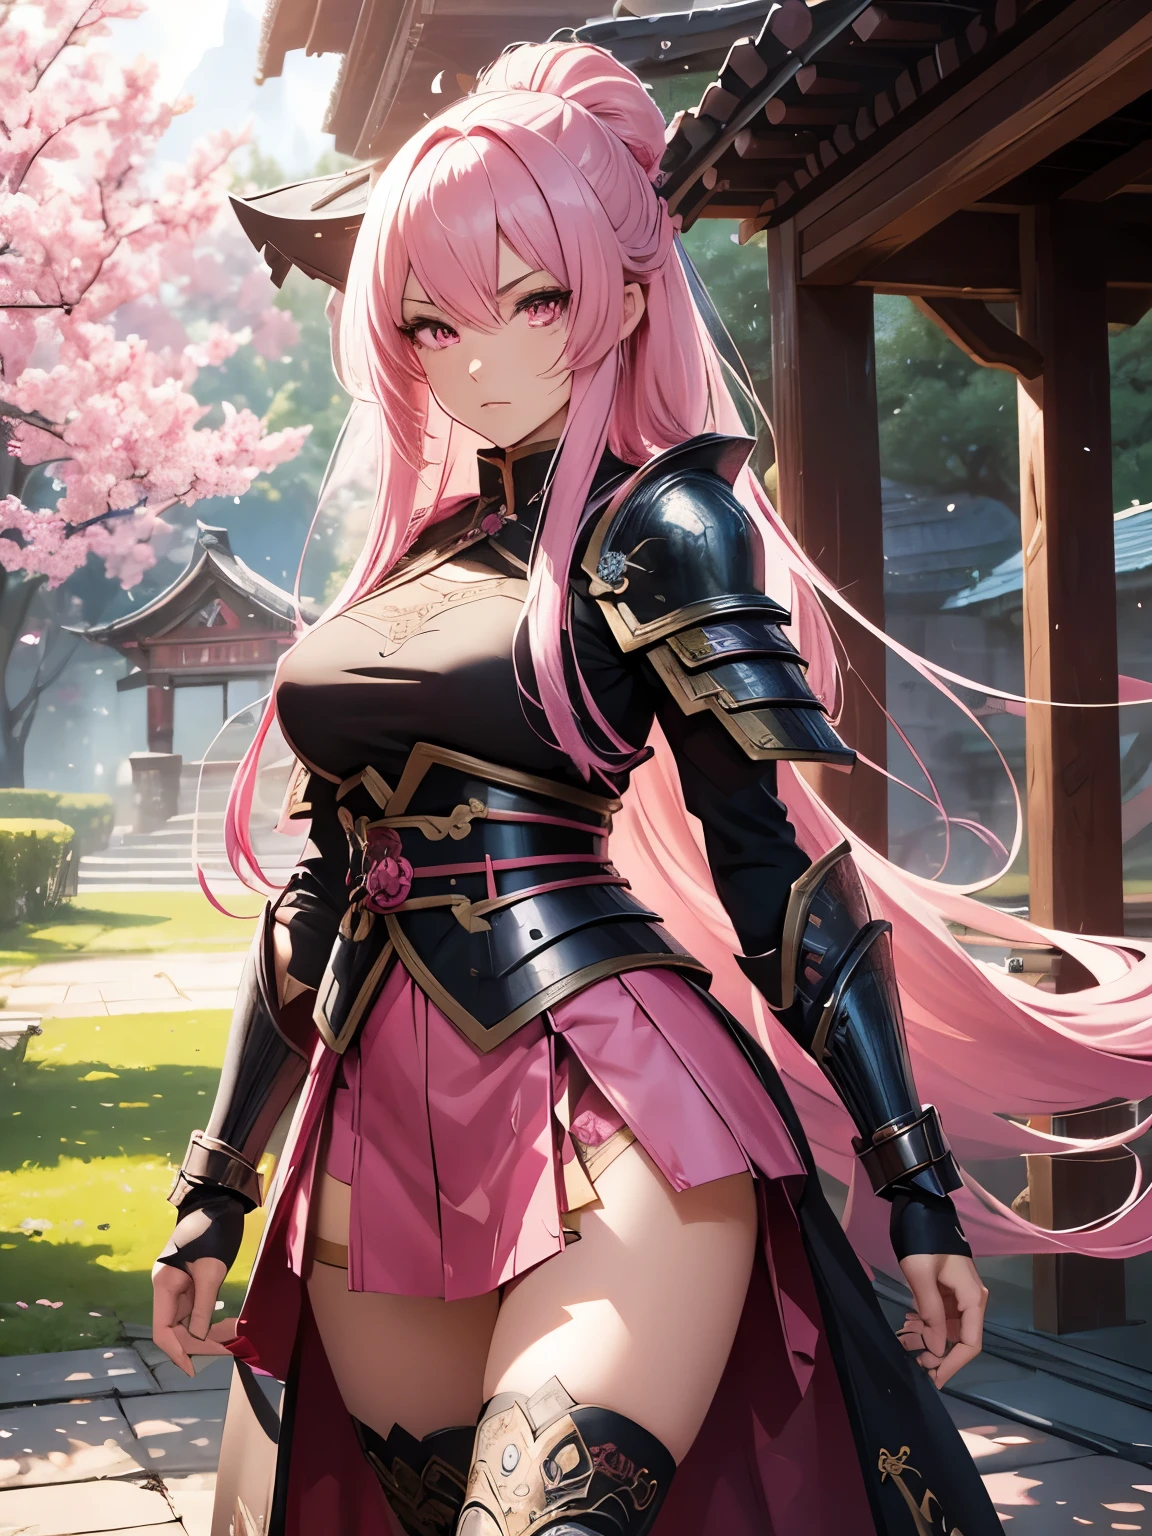 arte digital, 4K/8K, Sozinho, RPG, fantasia, garota guerreira, cabelo rosa muito longo, Olhos rosa, mulher kitsune, determinado, Heróico, intrincada armadura samurai, armadura sexy, minissaia intrincada, cenário da árvore de sakura, meia complexa